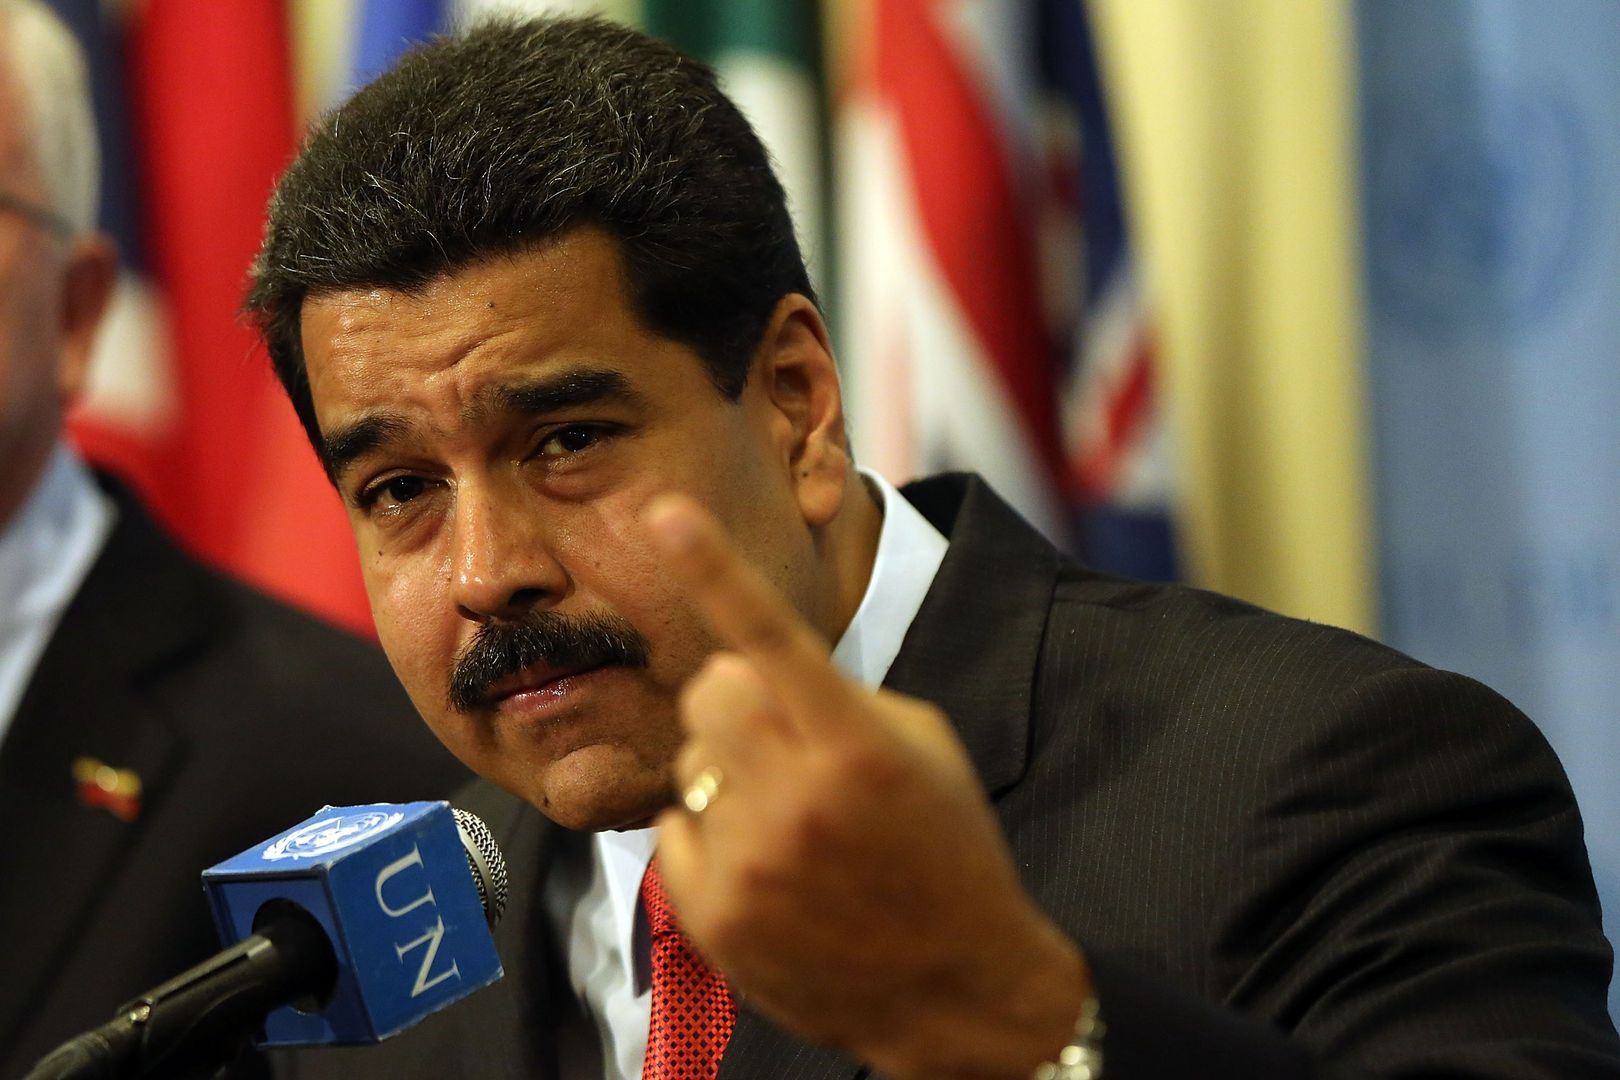 Wenezuela. Nicolas Maduro ma radę na kryzys. "Ródźcie co najmniej 6 dzieci!"